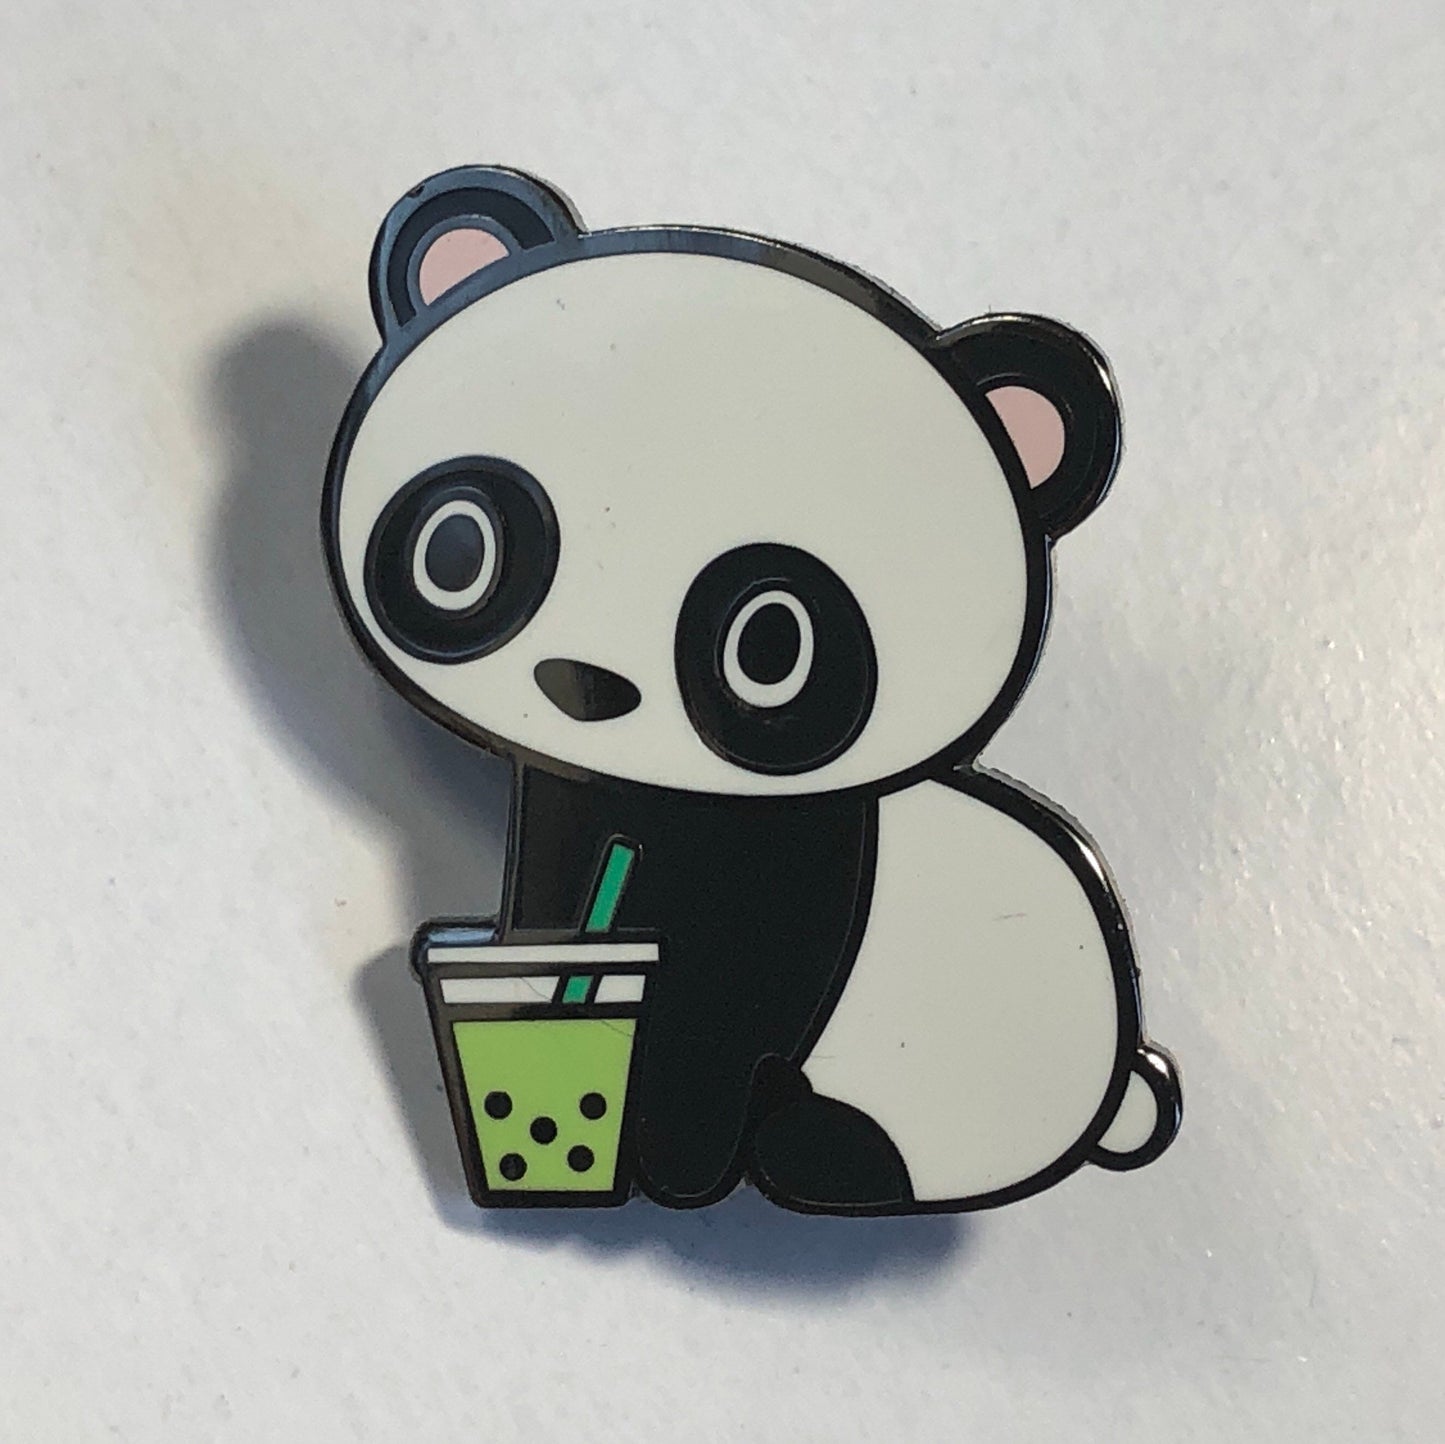 Panda Boba Matcha - Hard Enamel Pin, Panda Pin, Cute Panda Cartoon, Panda Enamel Pin